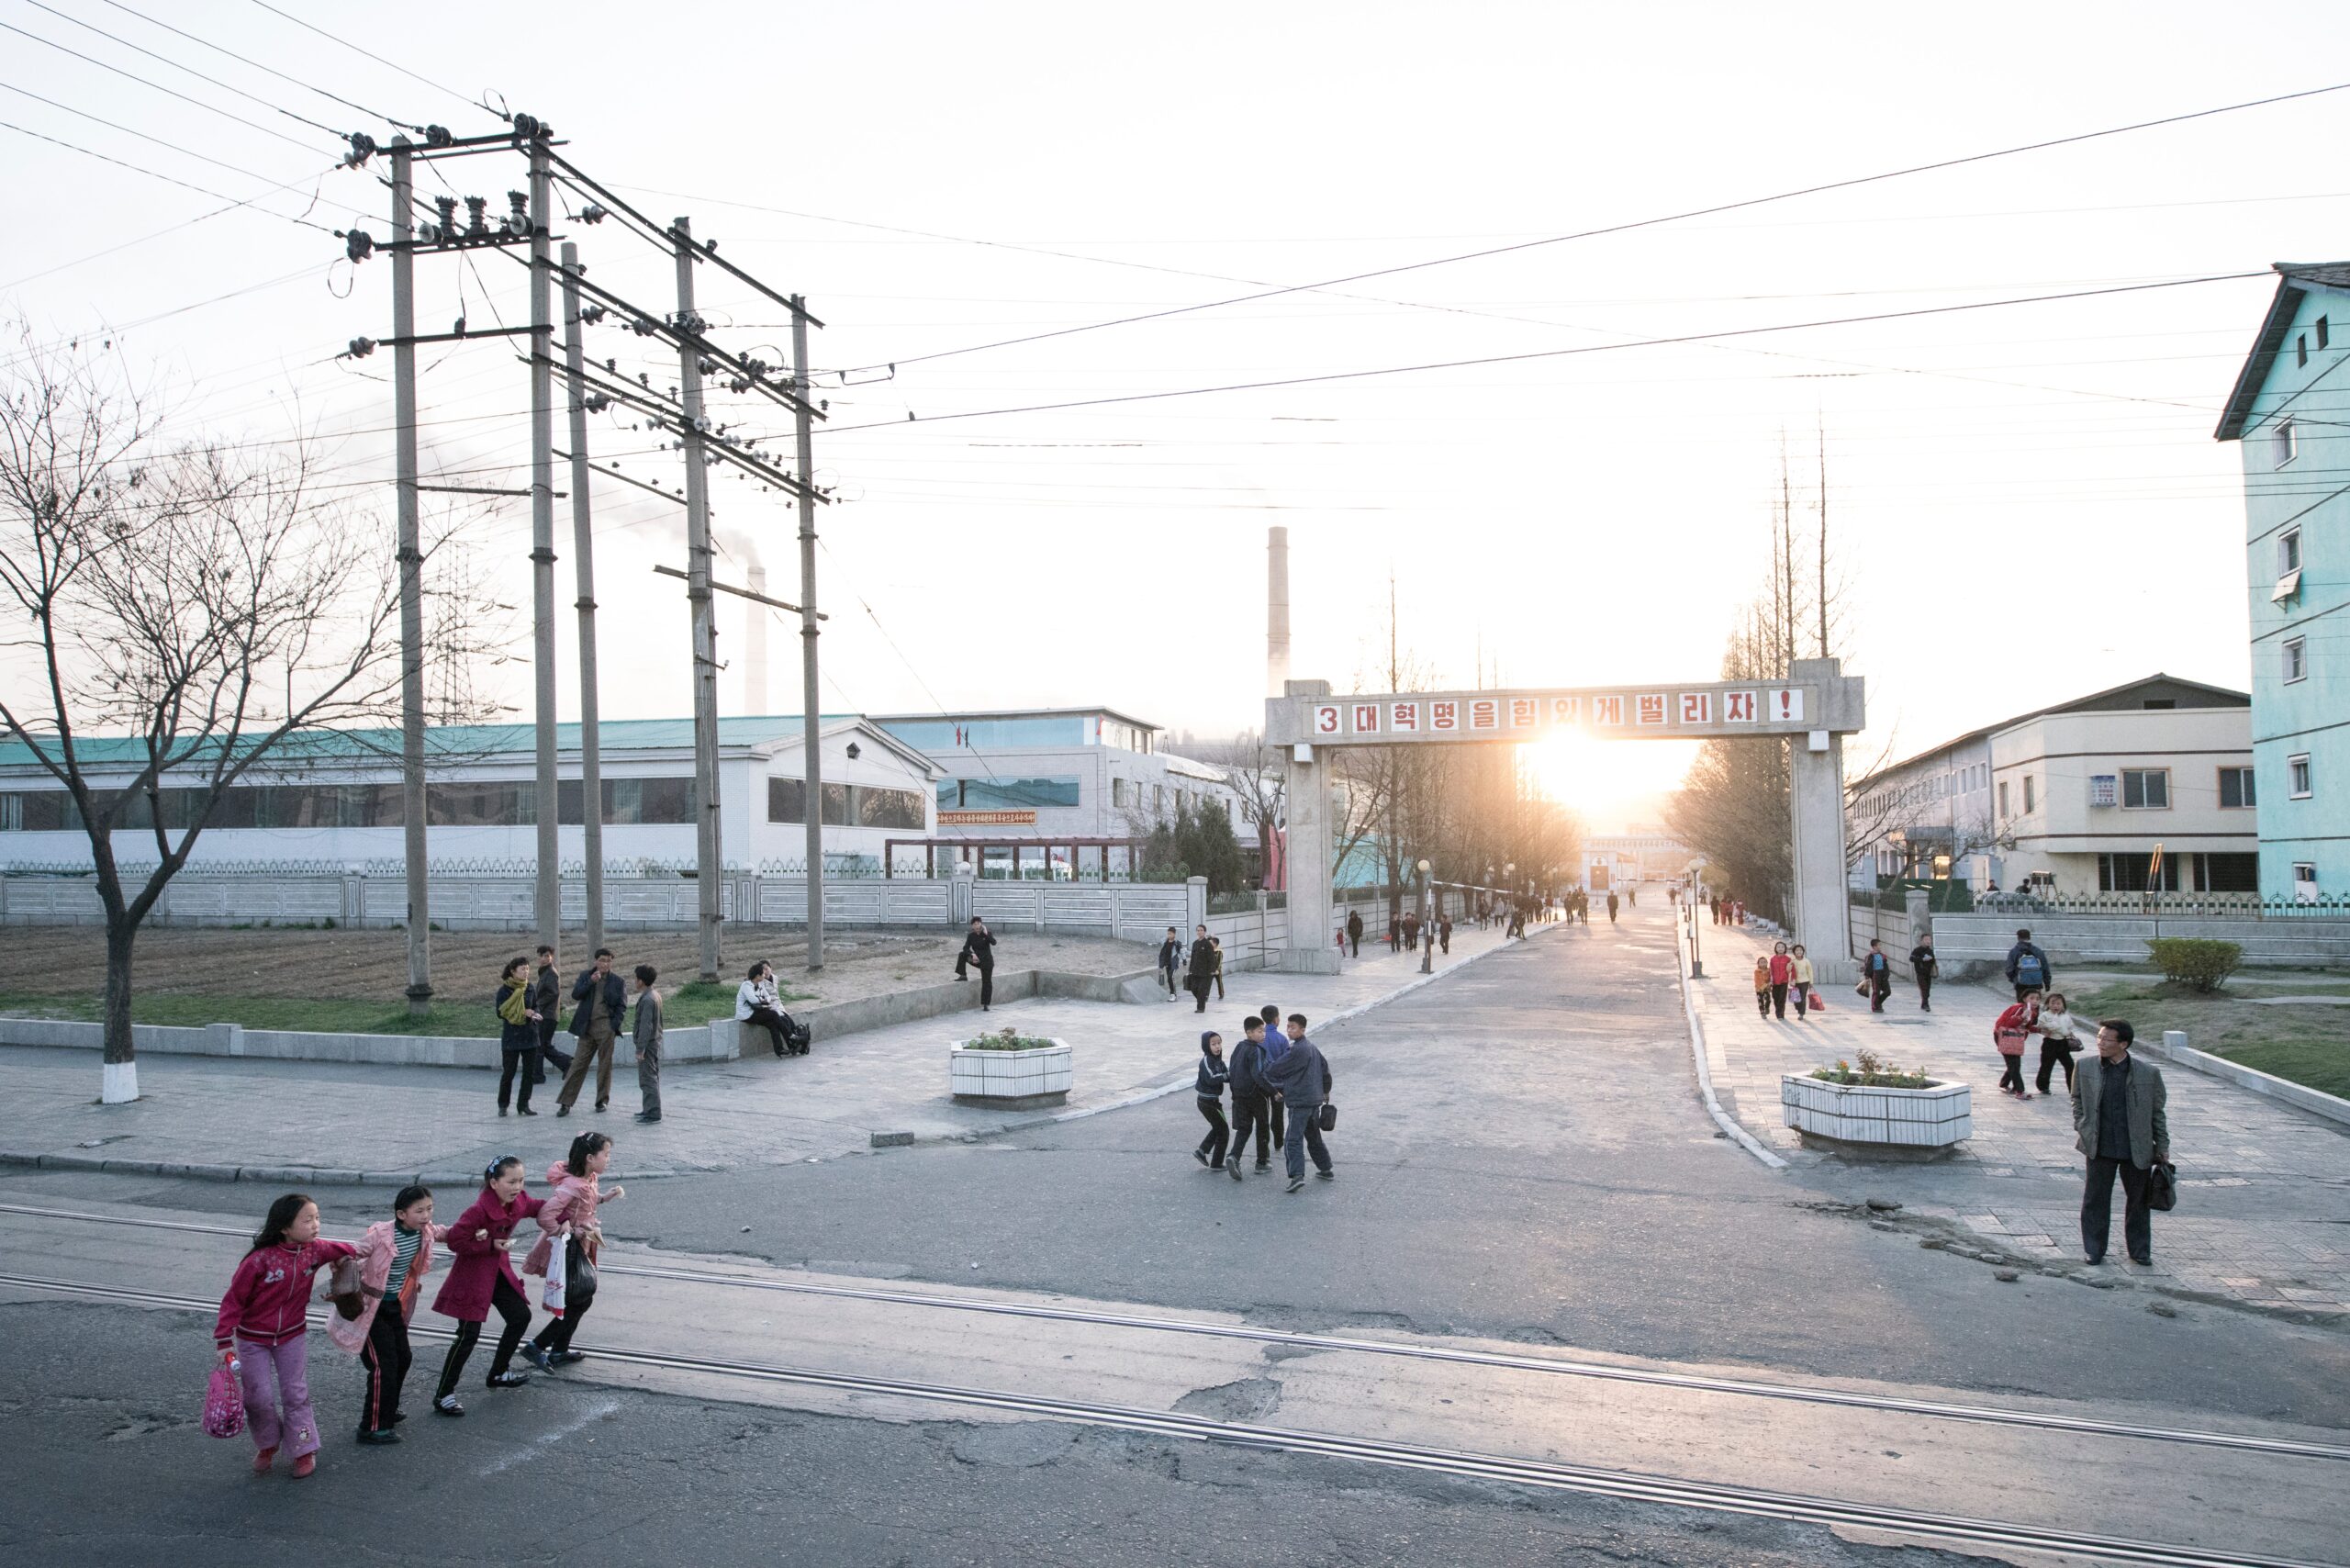 Street scene, kids, outdoor, sunset, Pyongyang, North Korea